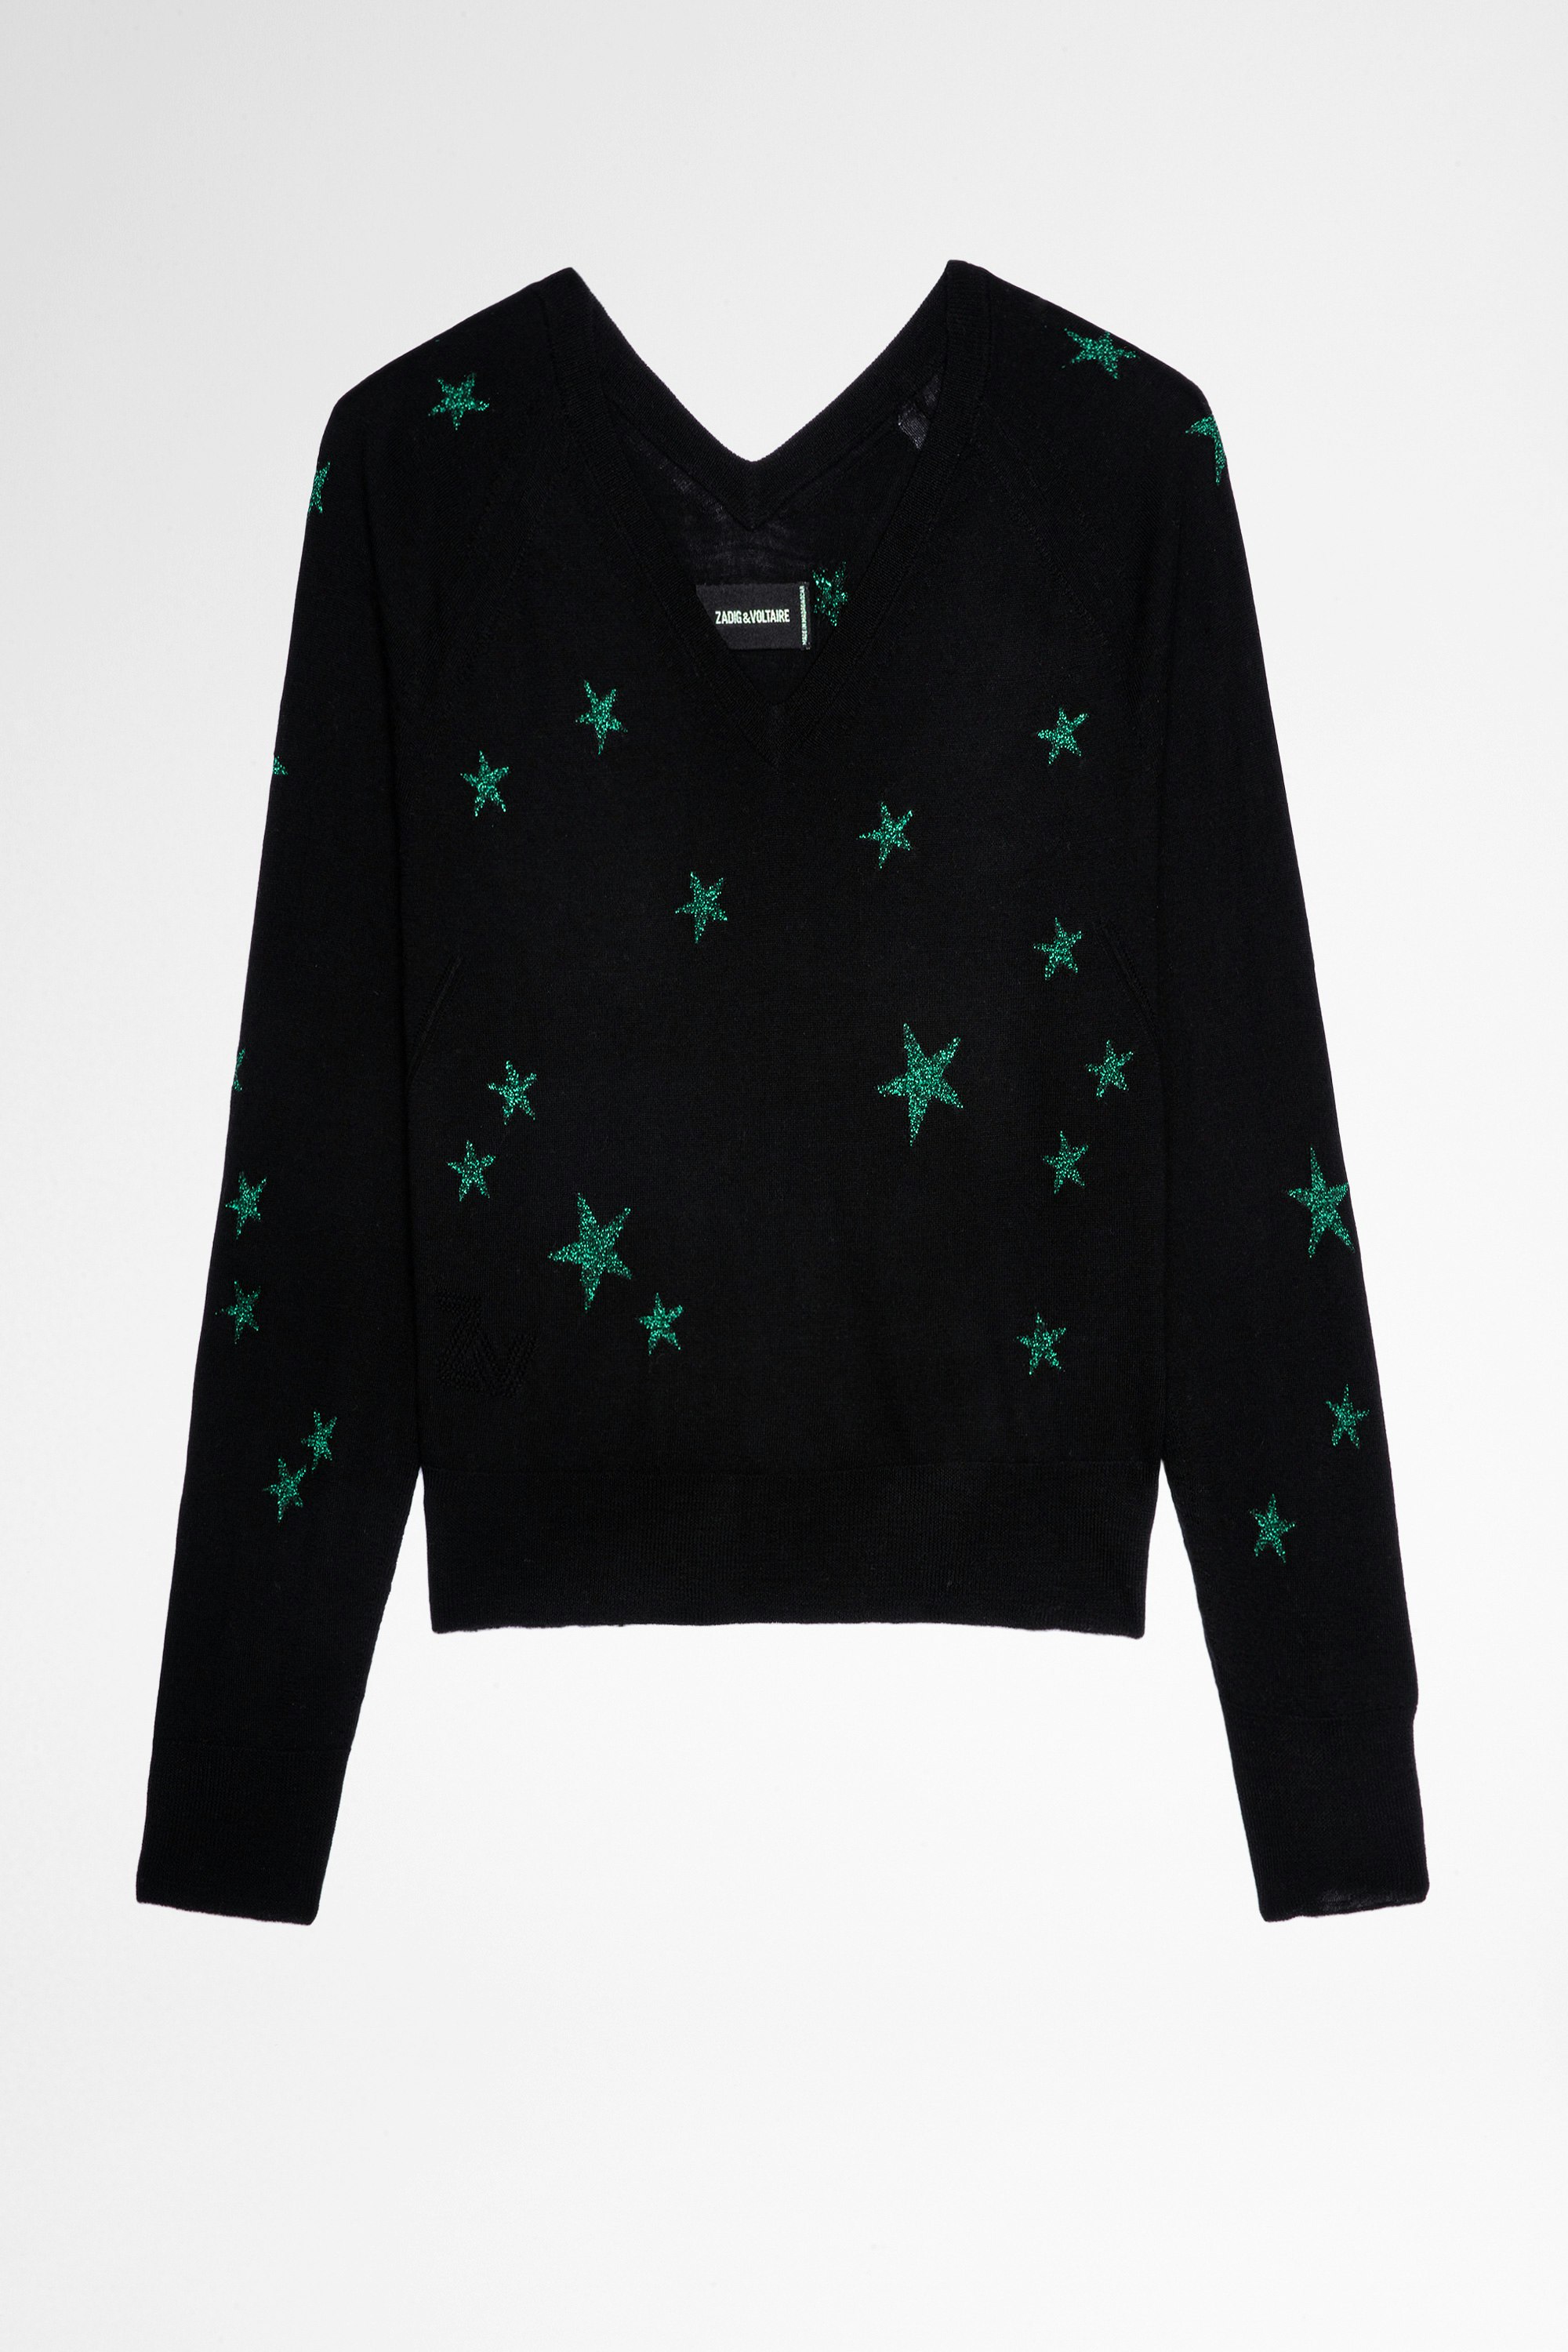 Azura Shiny Sweater Women's merino sweater with star pattern